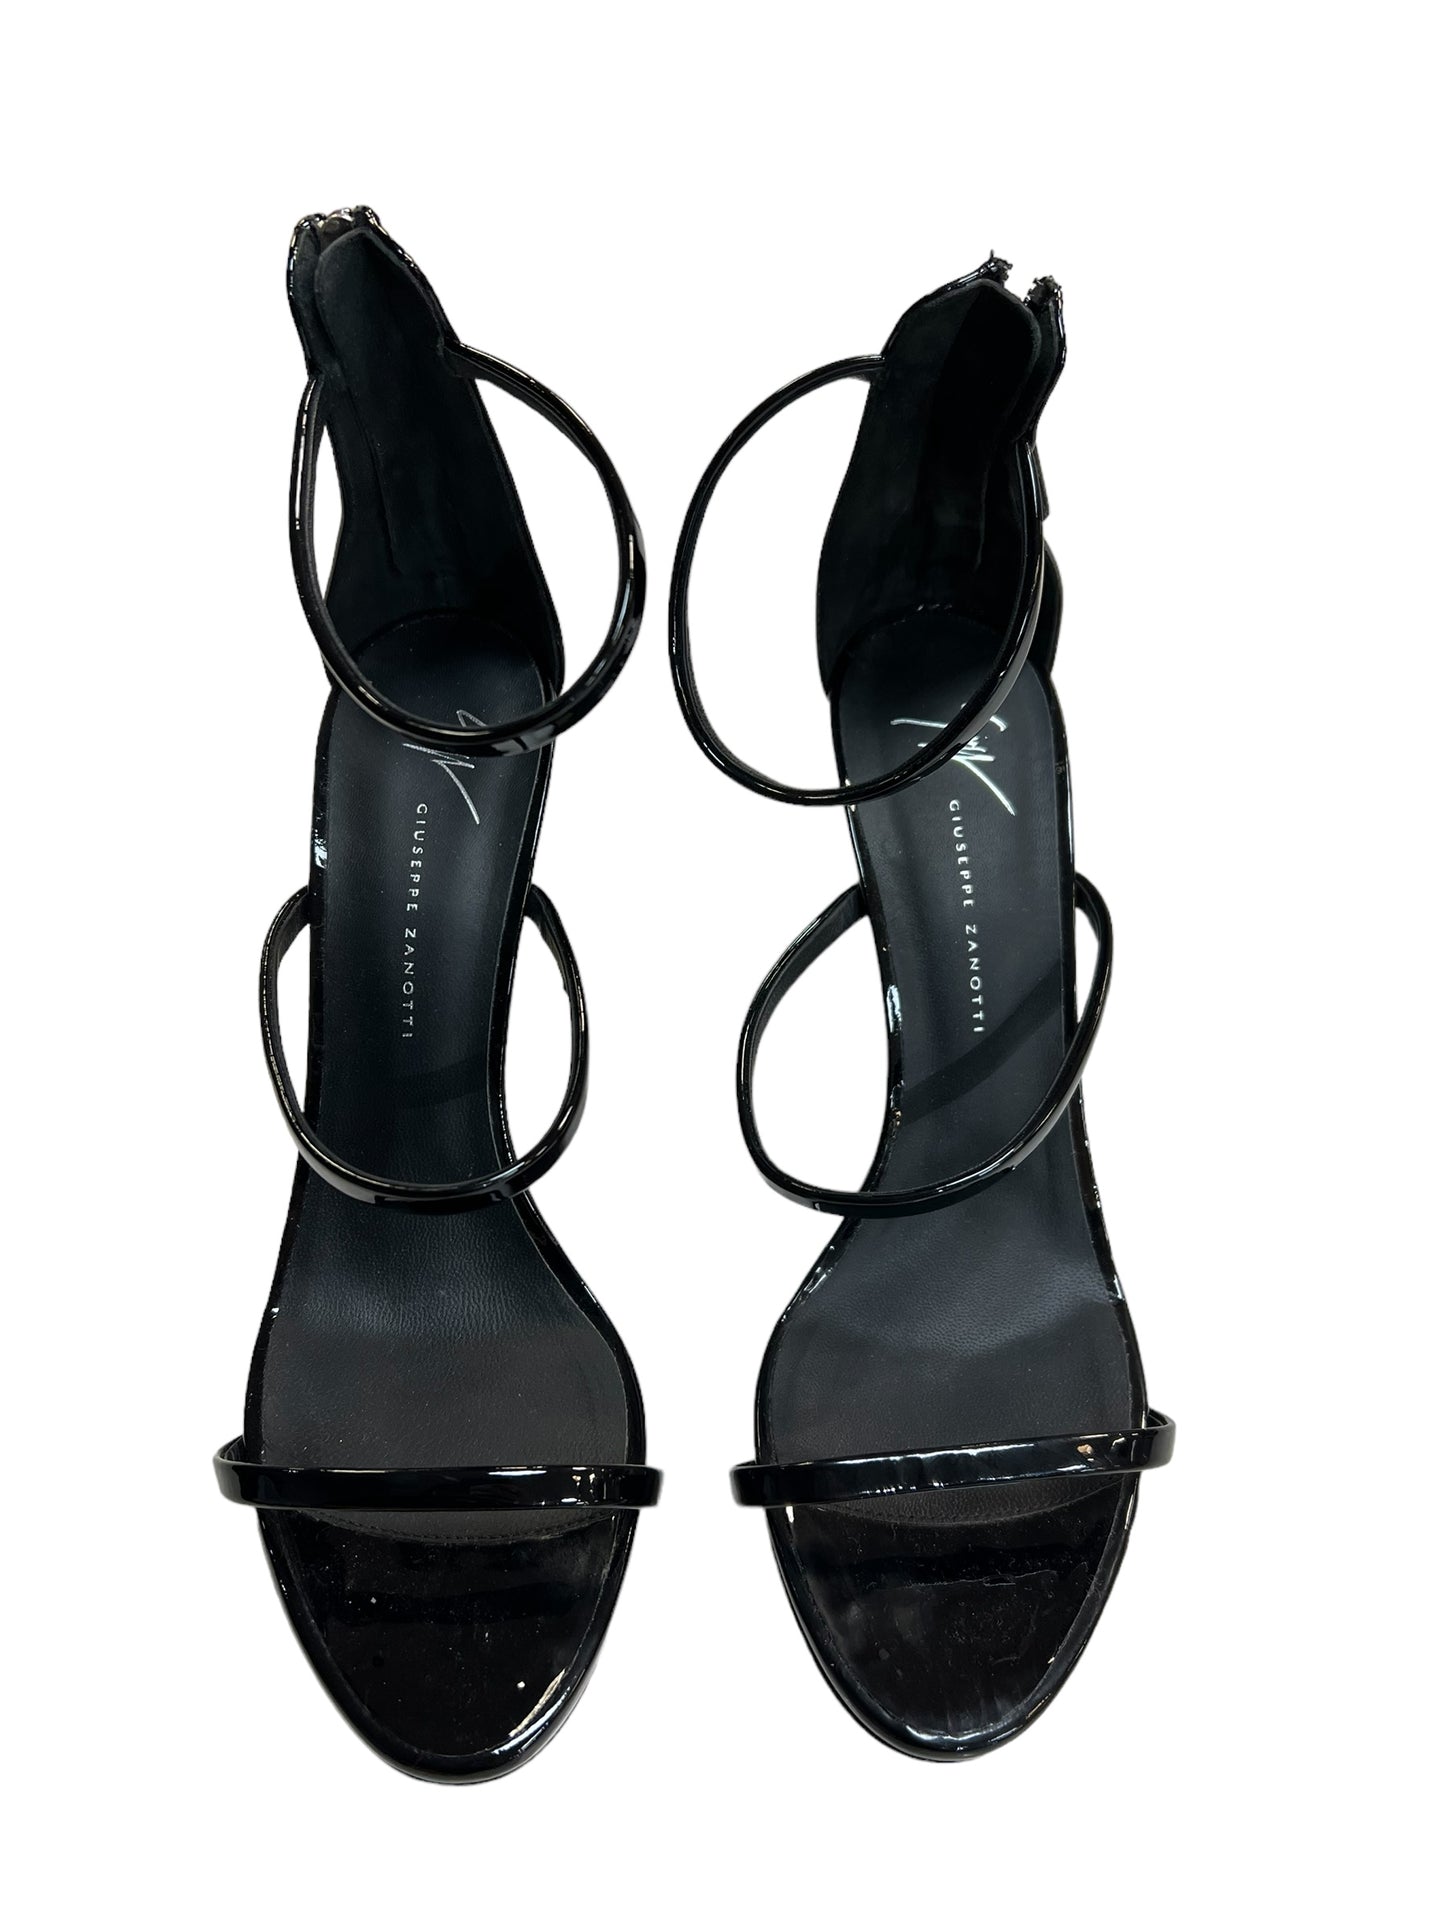 Shoes Designer By Giuseppe Zanotti  Size: EU 40